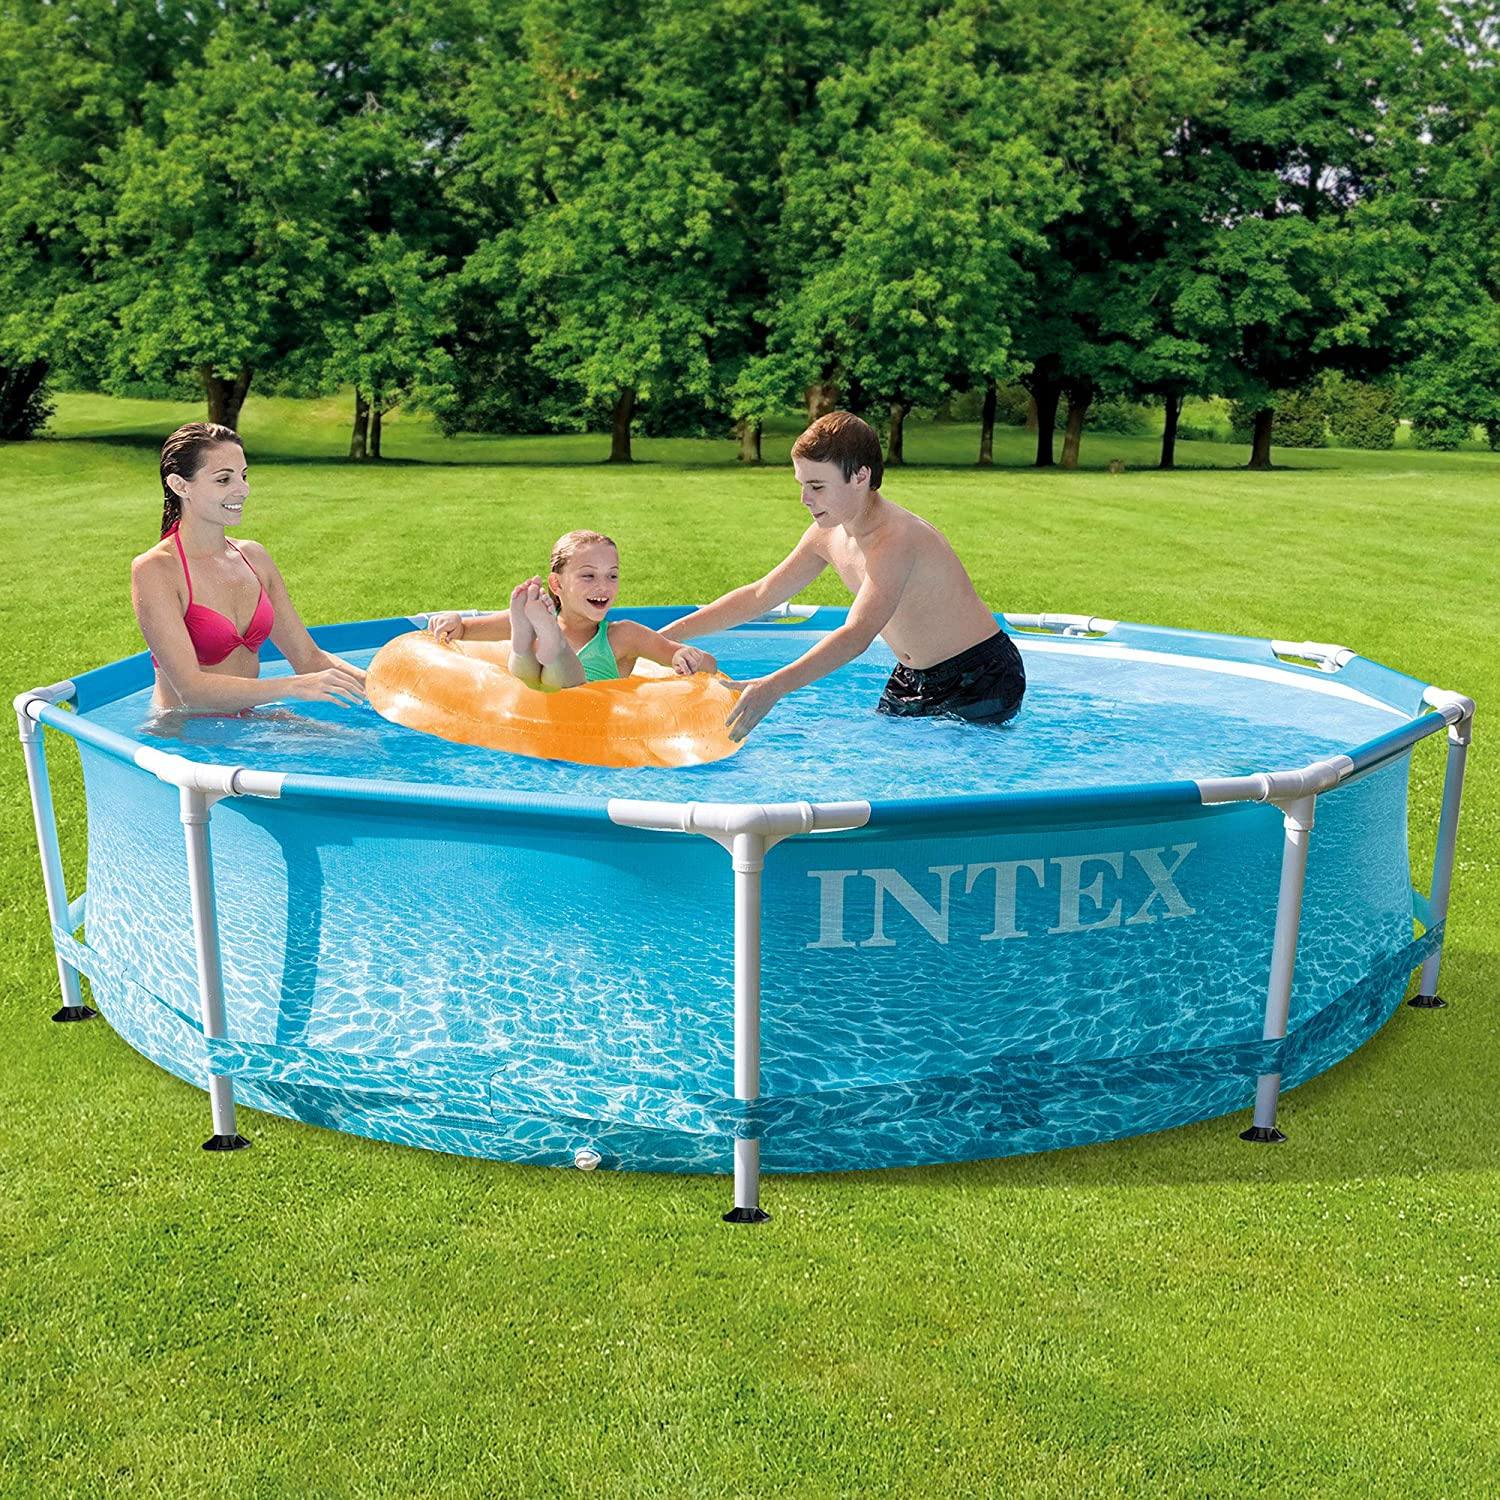 Intex 10x30 Metal Pool